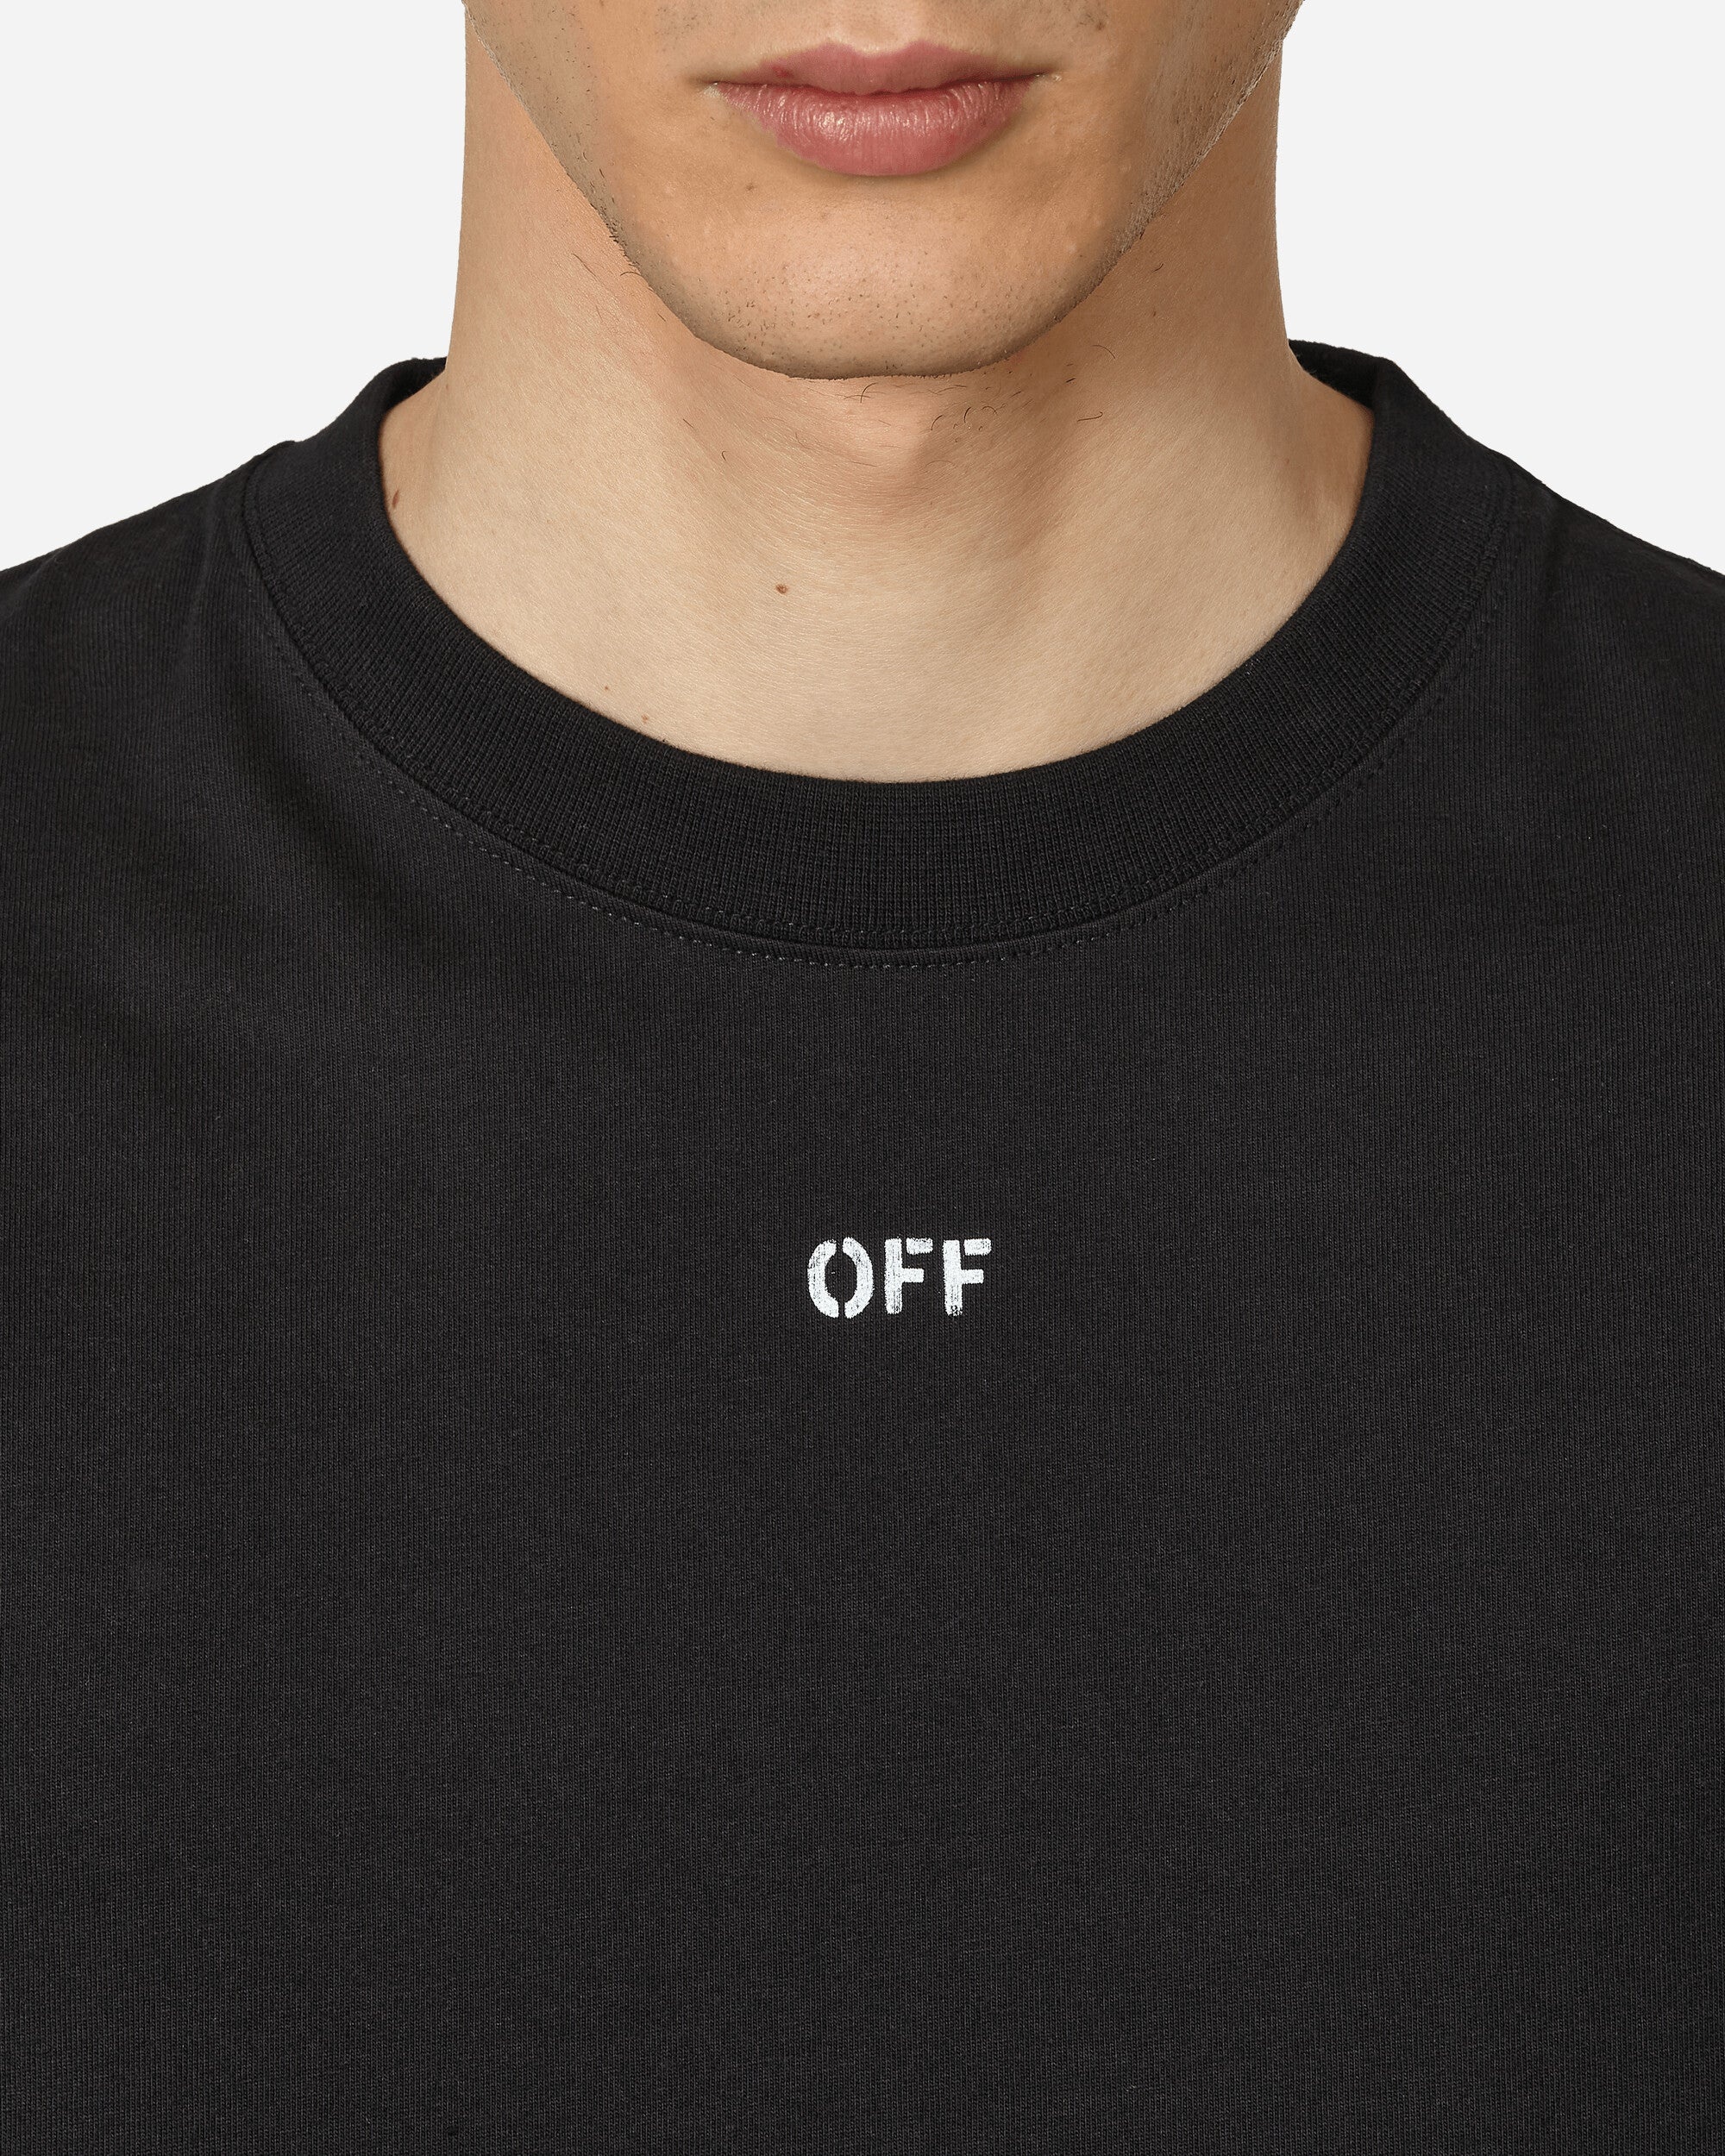 Off Stamp Skate T-Shirt Black - 5